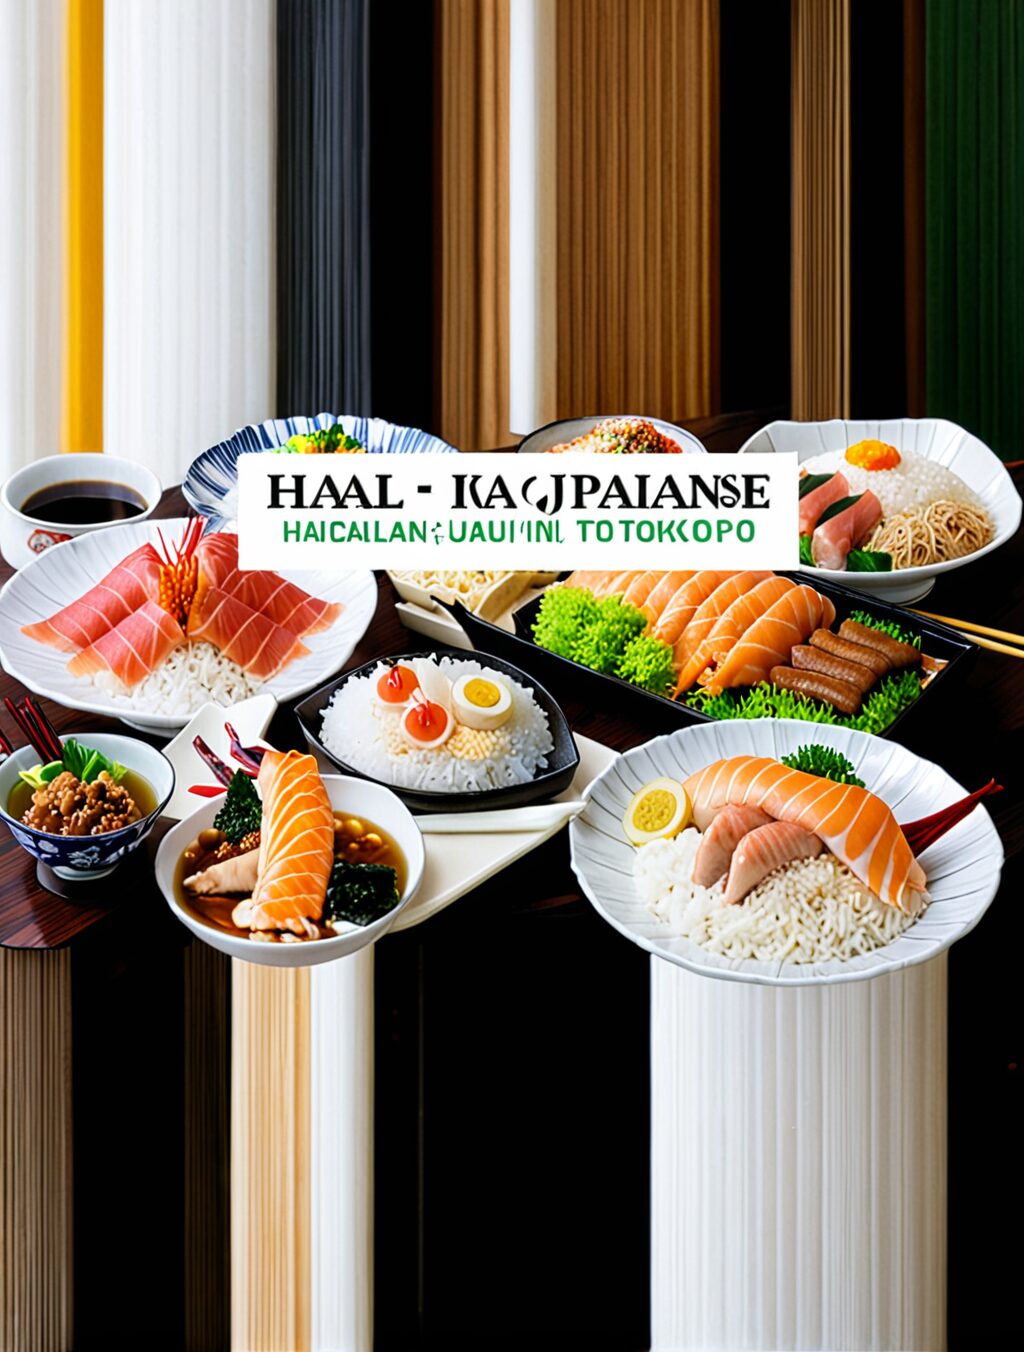 halal japanese food in tokyo